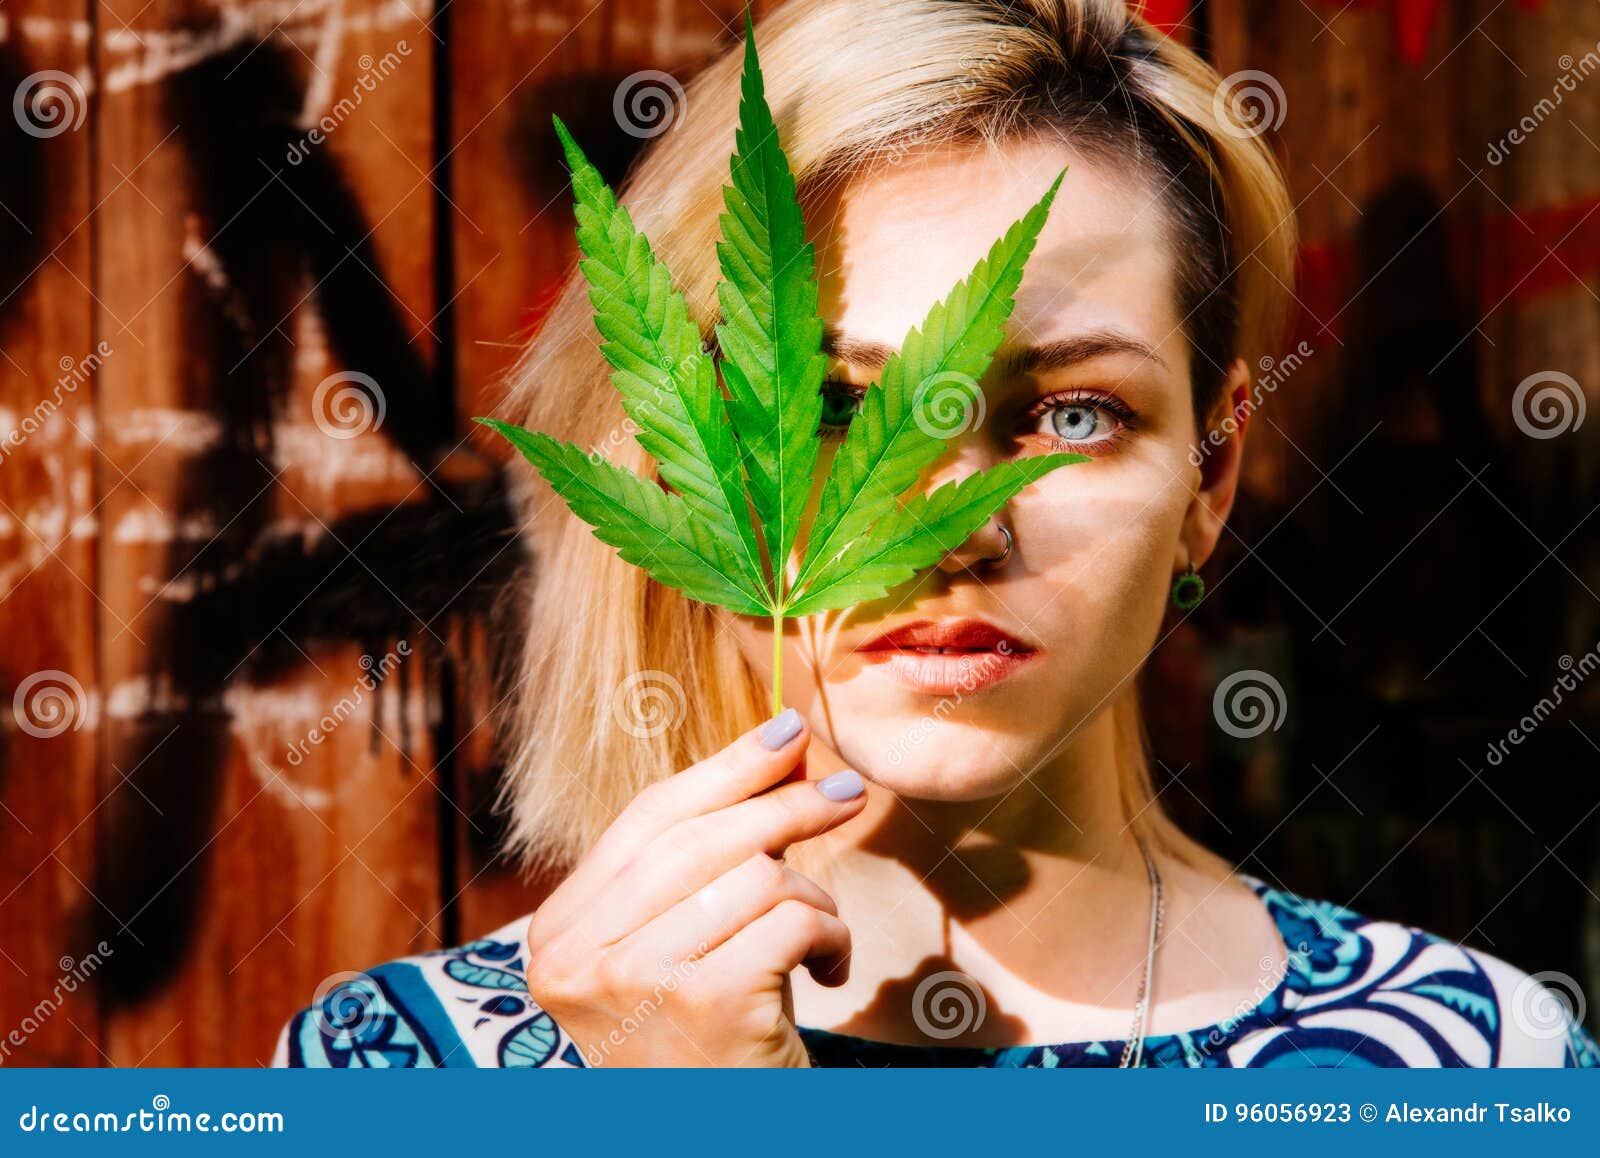 Конопля девушка фото выведение алкоголя и марихуаны